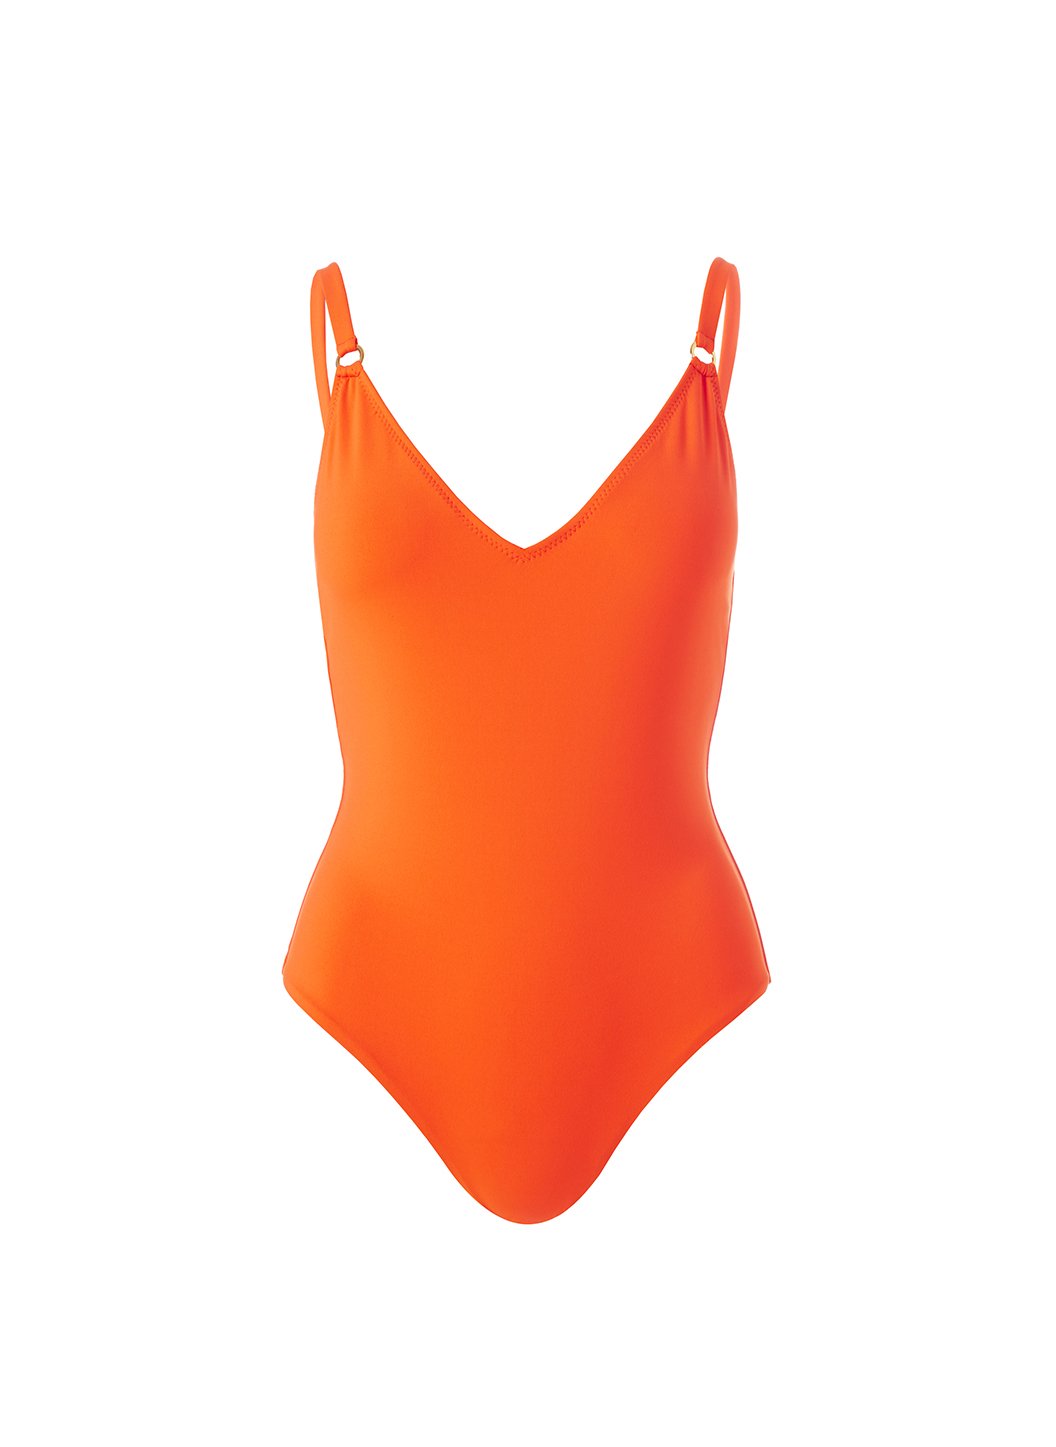 Cyprus Papaya Swimsuit Cutout 